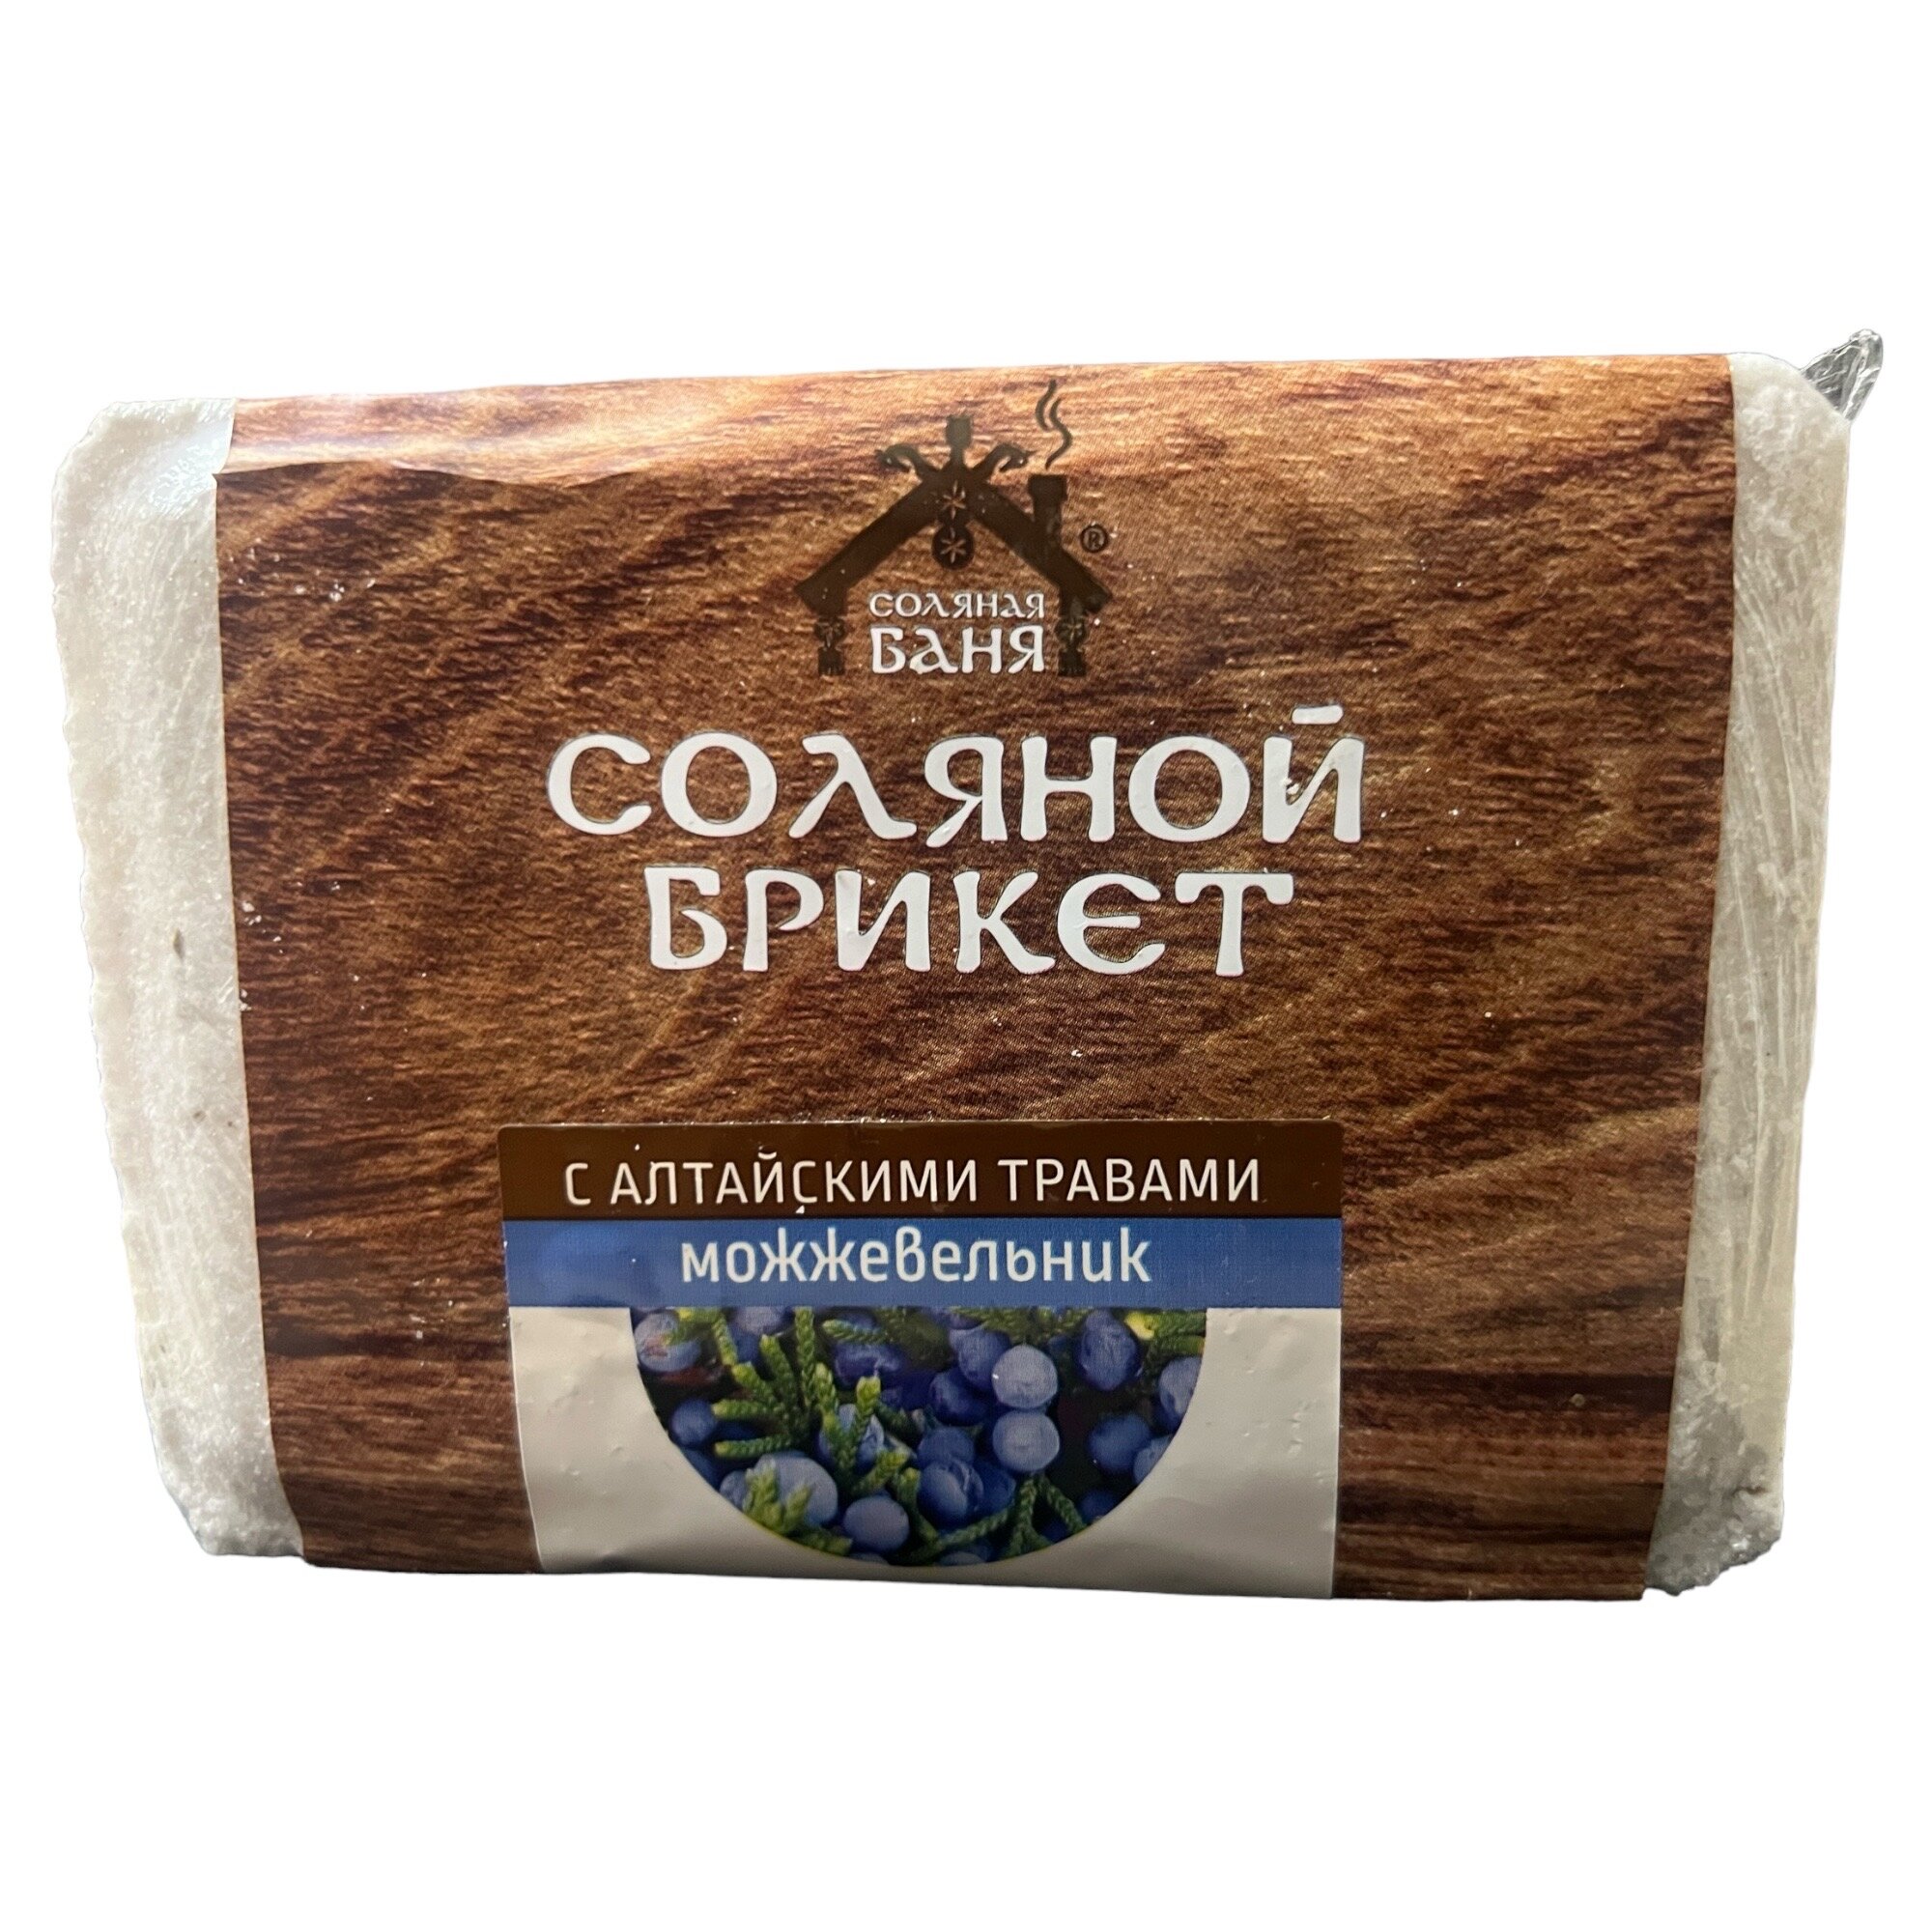 Соляной брикет "Соляная баня" с Алтайскими травами "Моживельник" 135 кг